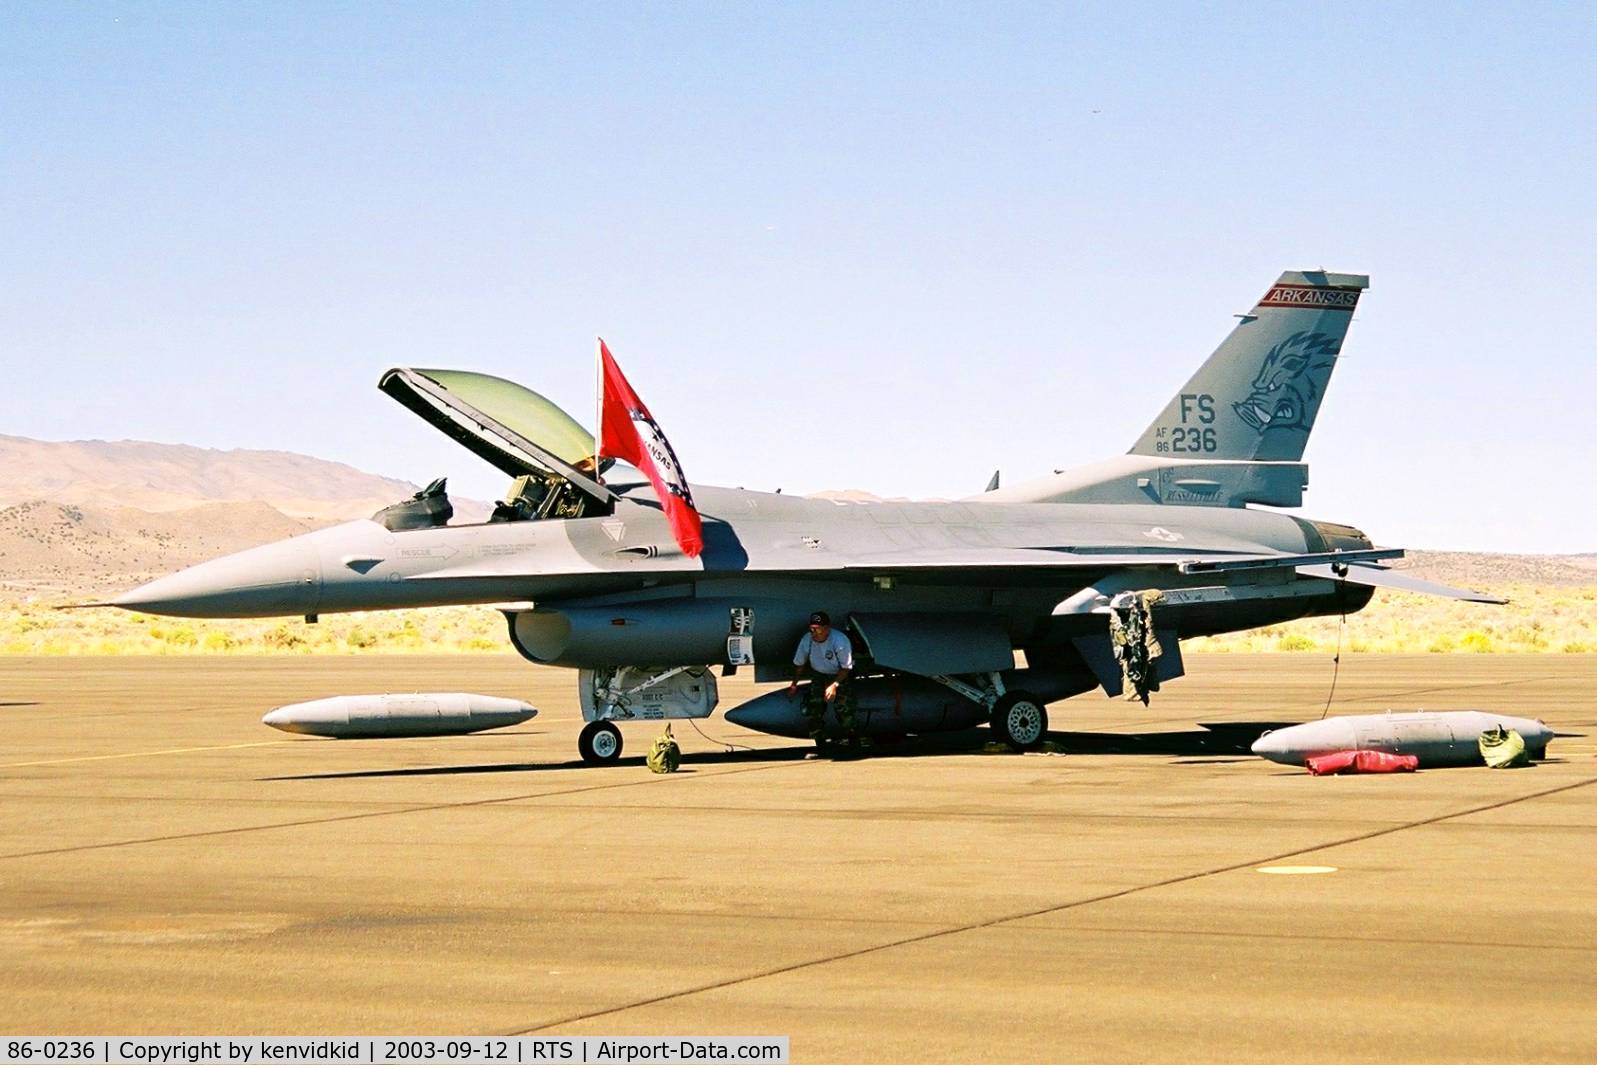 86-0236, General Dynamics F-16C Fighting Falcon C/N 5C-342, At the 2003 Reno Air Races.
Arkansas ANG.